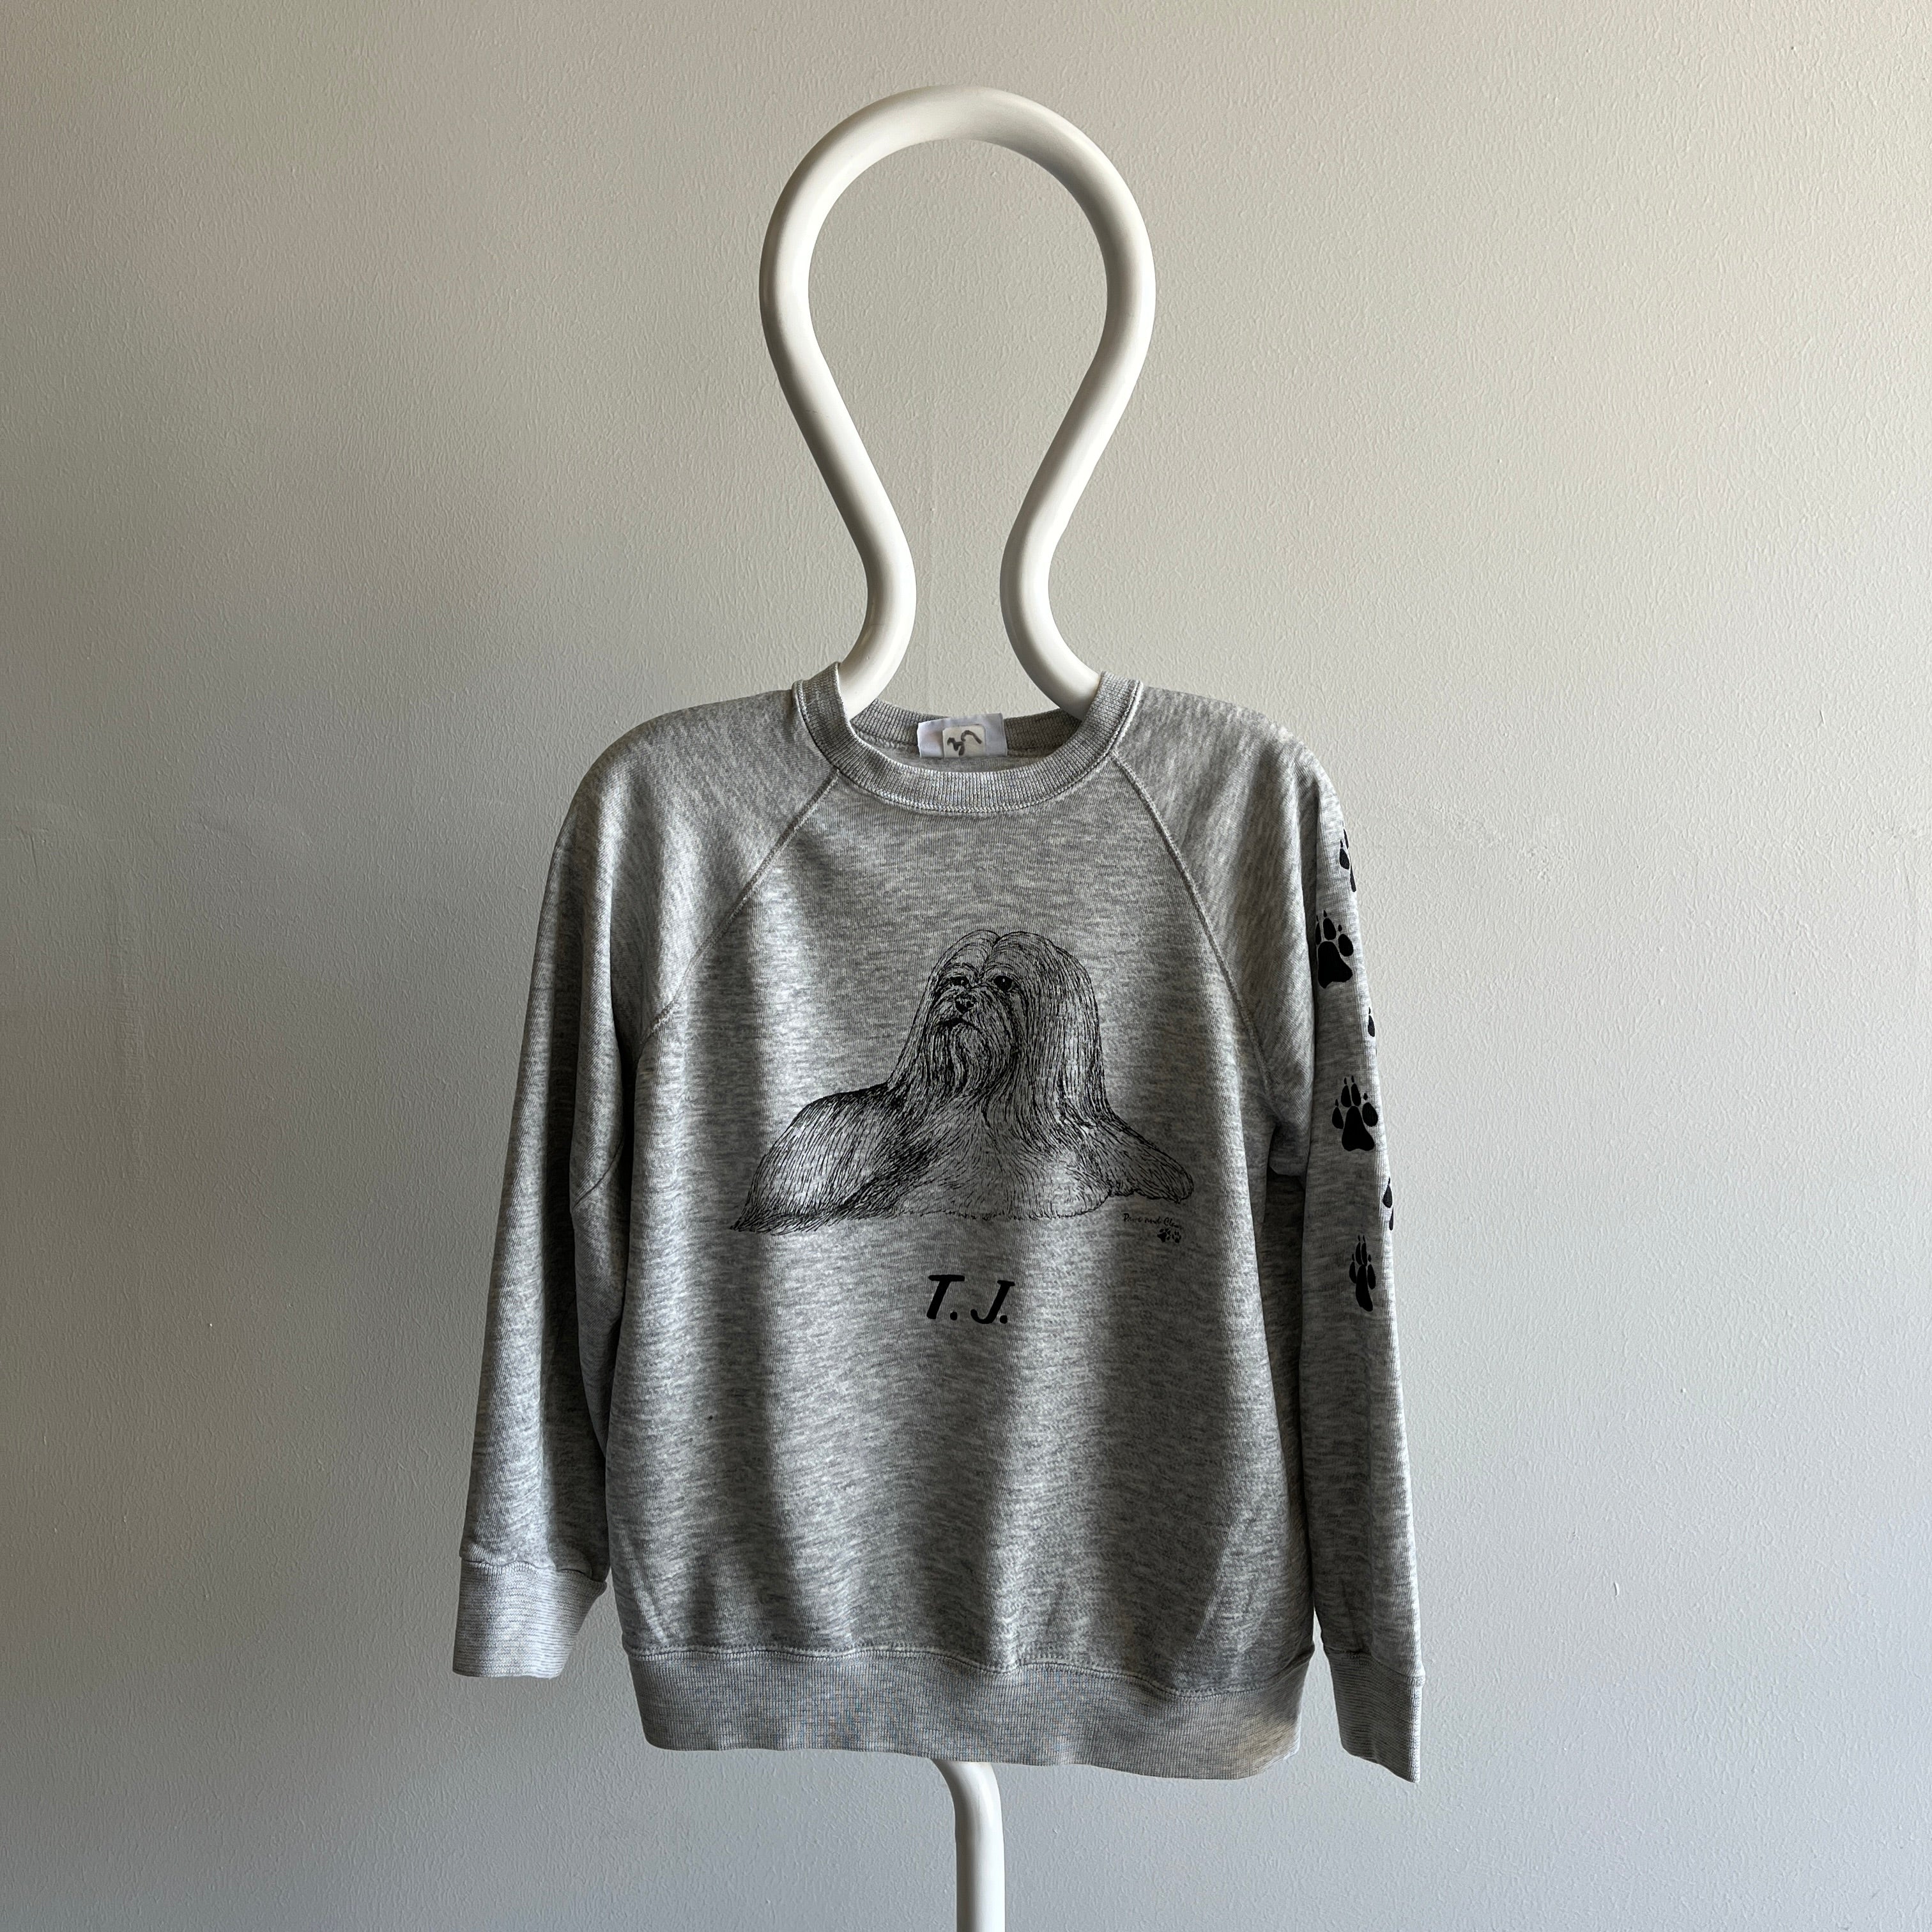 Sweat-shirt TJ 4 Eva et Eva des années 1980 - Collection personnelle